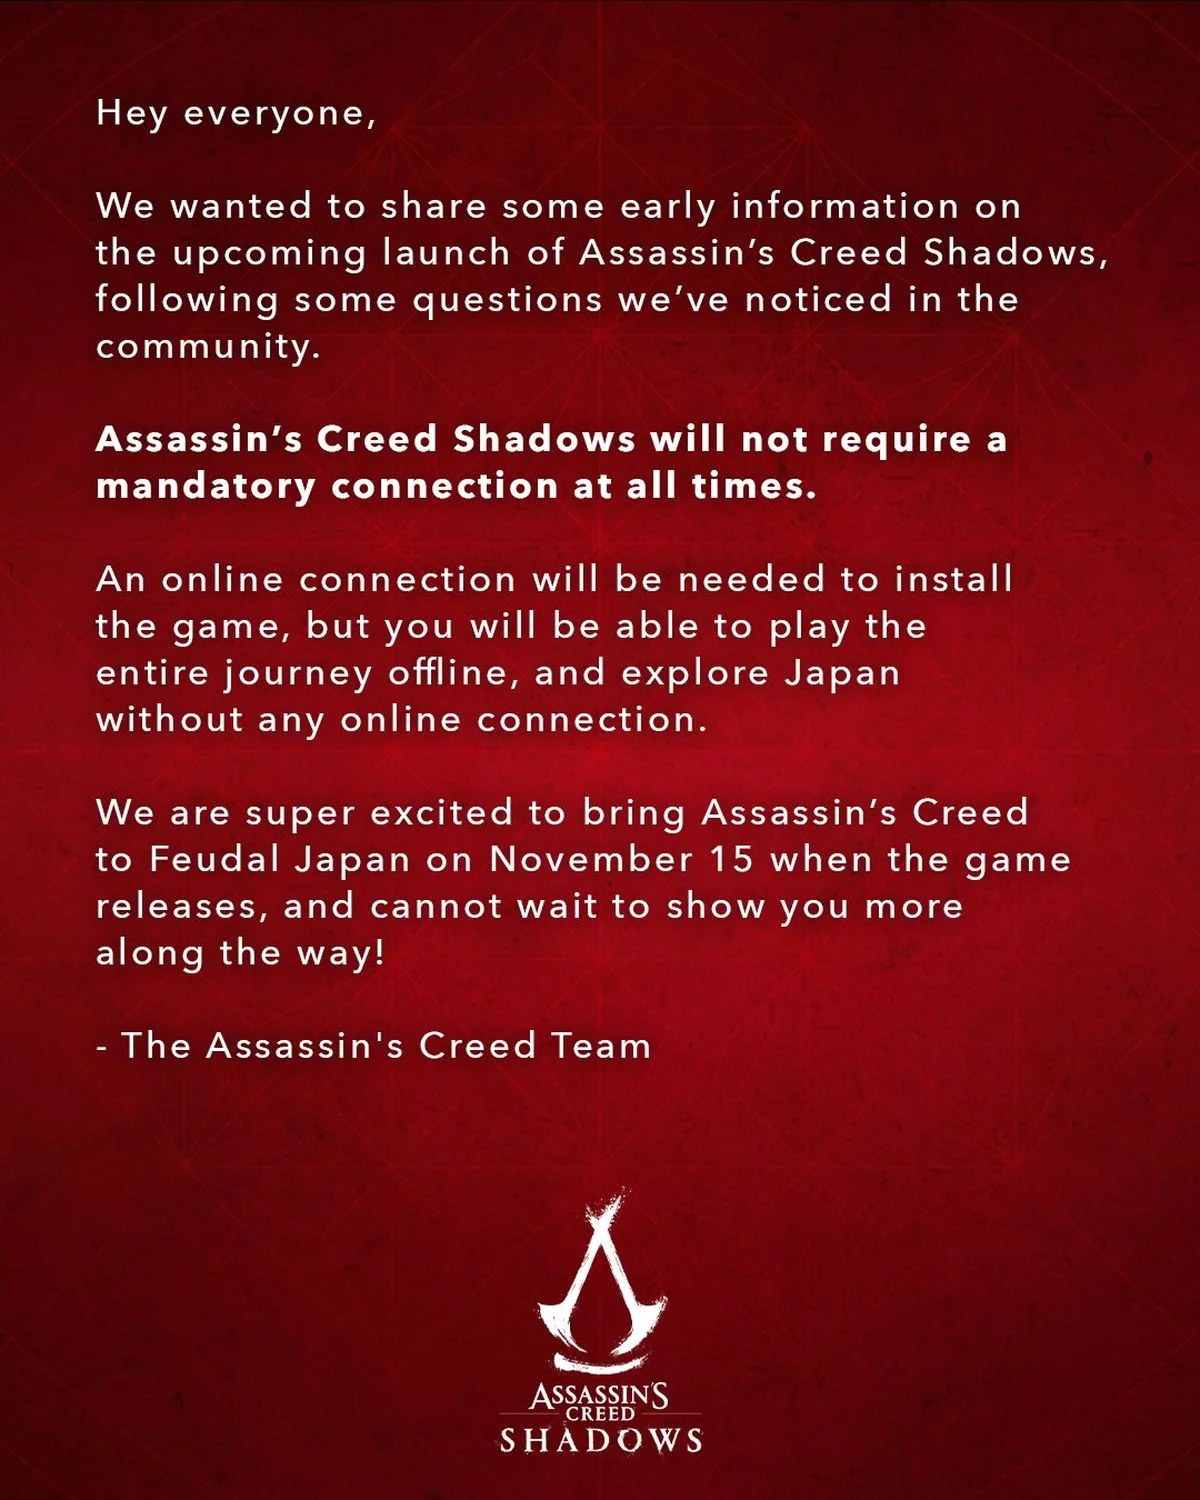 Assassins Creed Shadows всё же не потребует постоянного подключения к интернету - фото 1